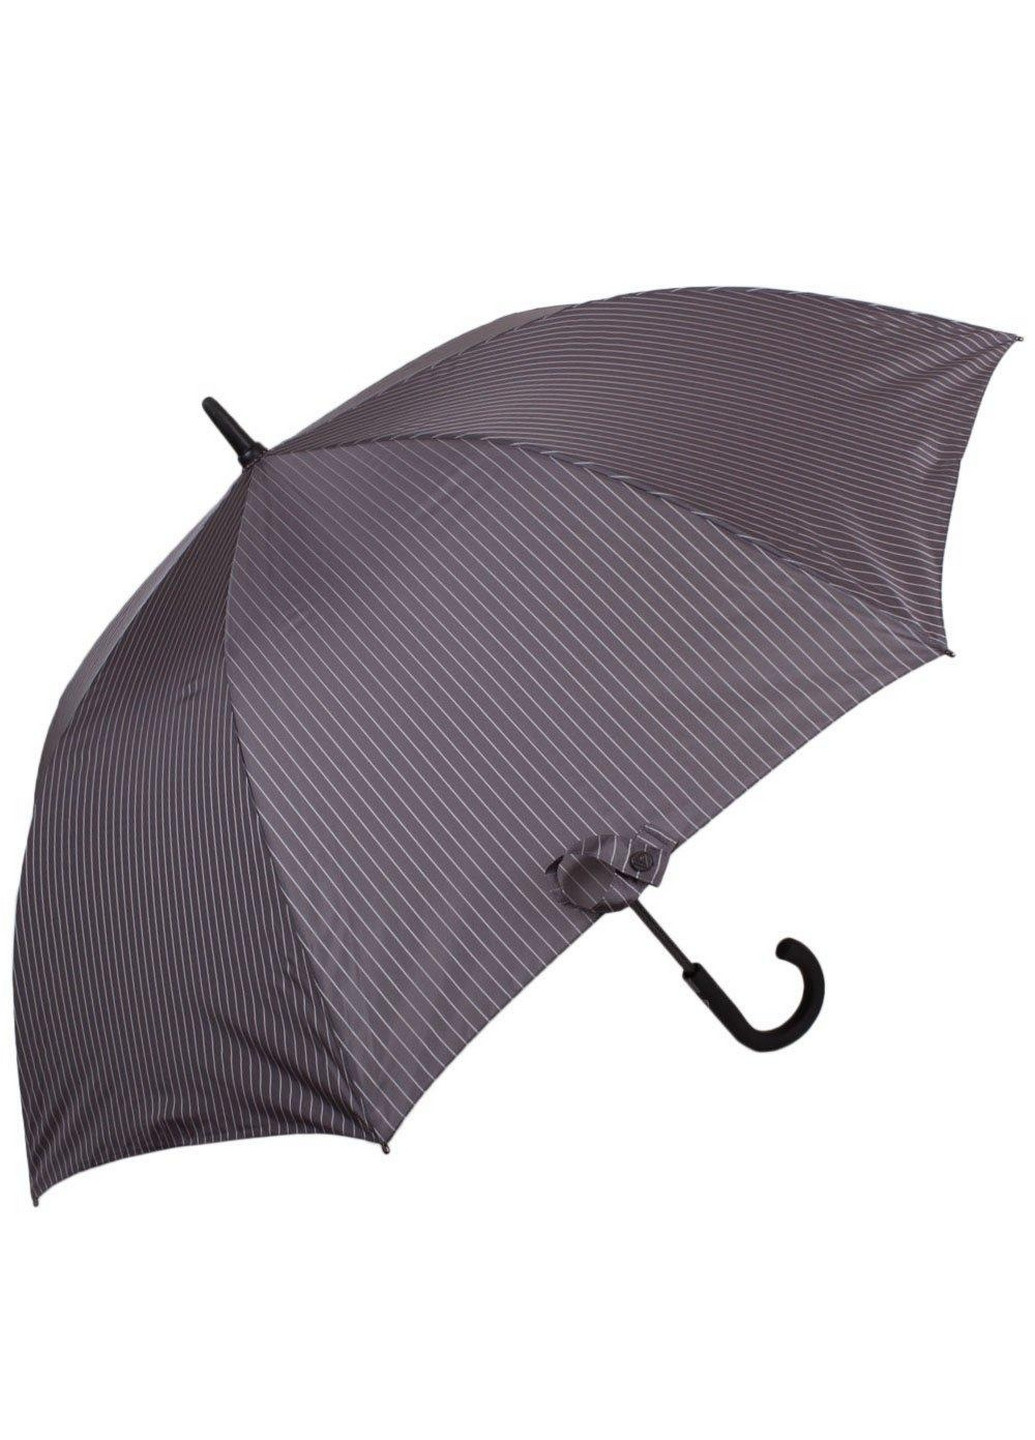 Мужской зонт-трость полуавтомат 117 см Fulton (260329767)